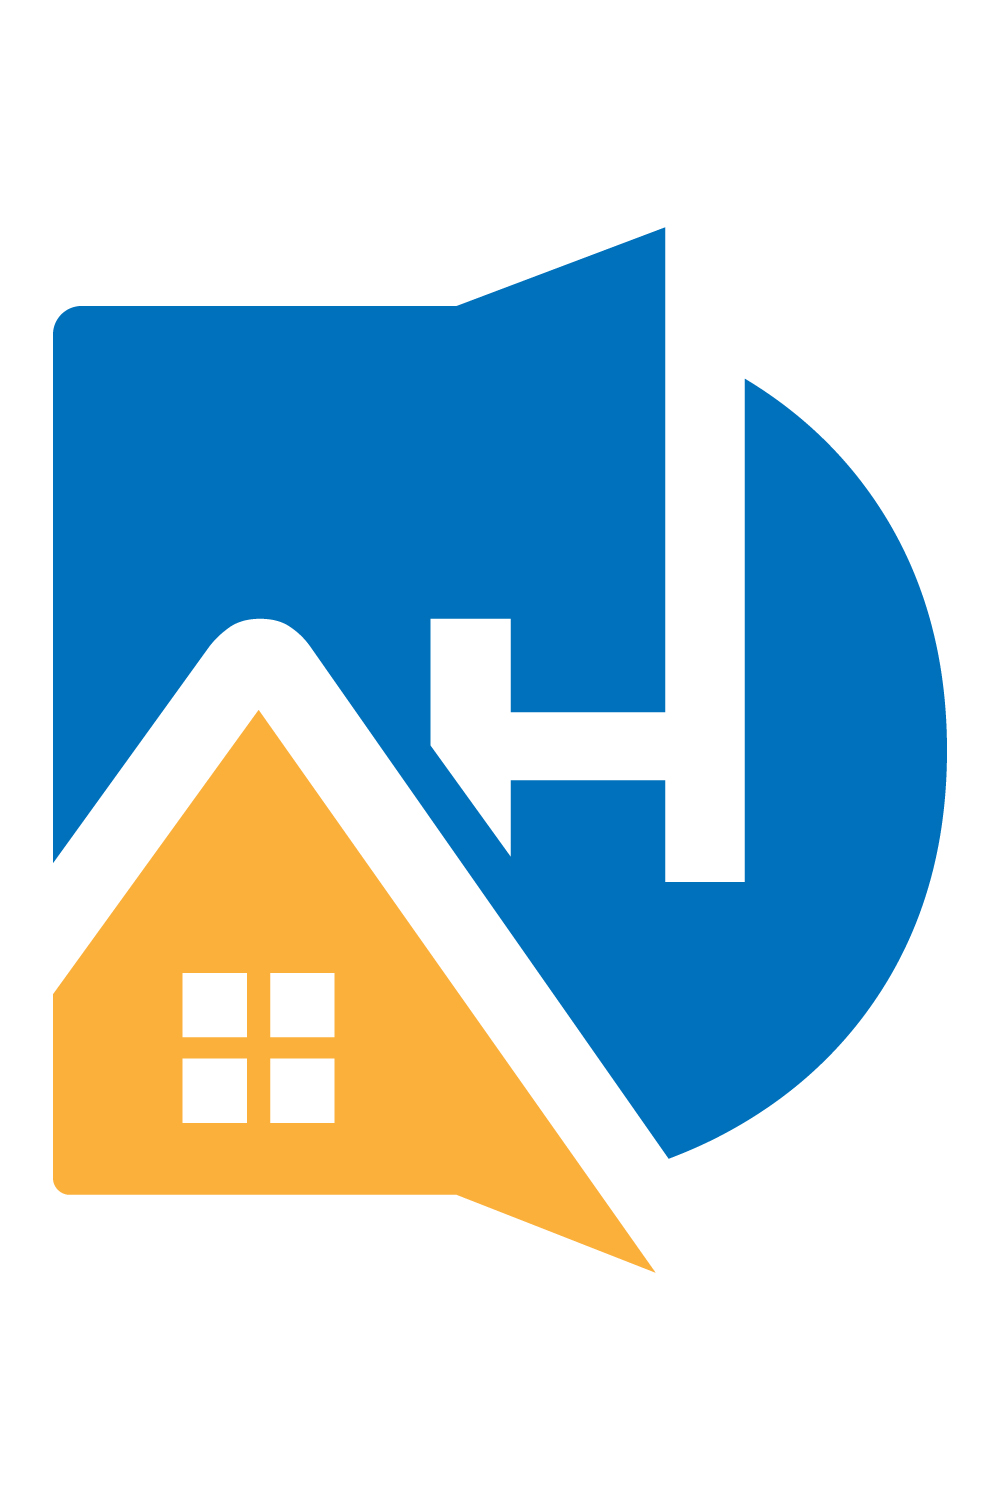 DAH Real Estate Logo design pinterest preview image.